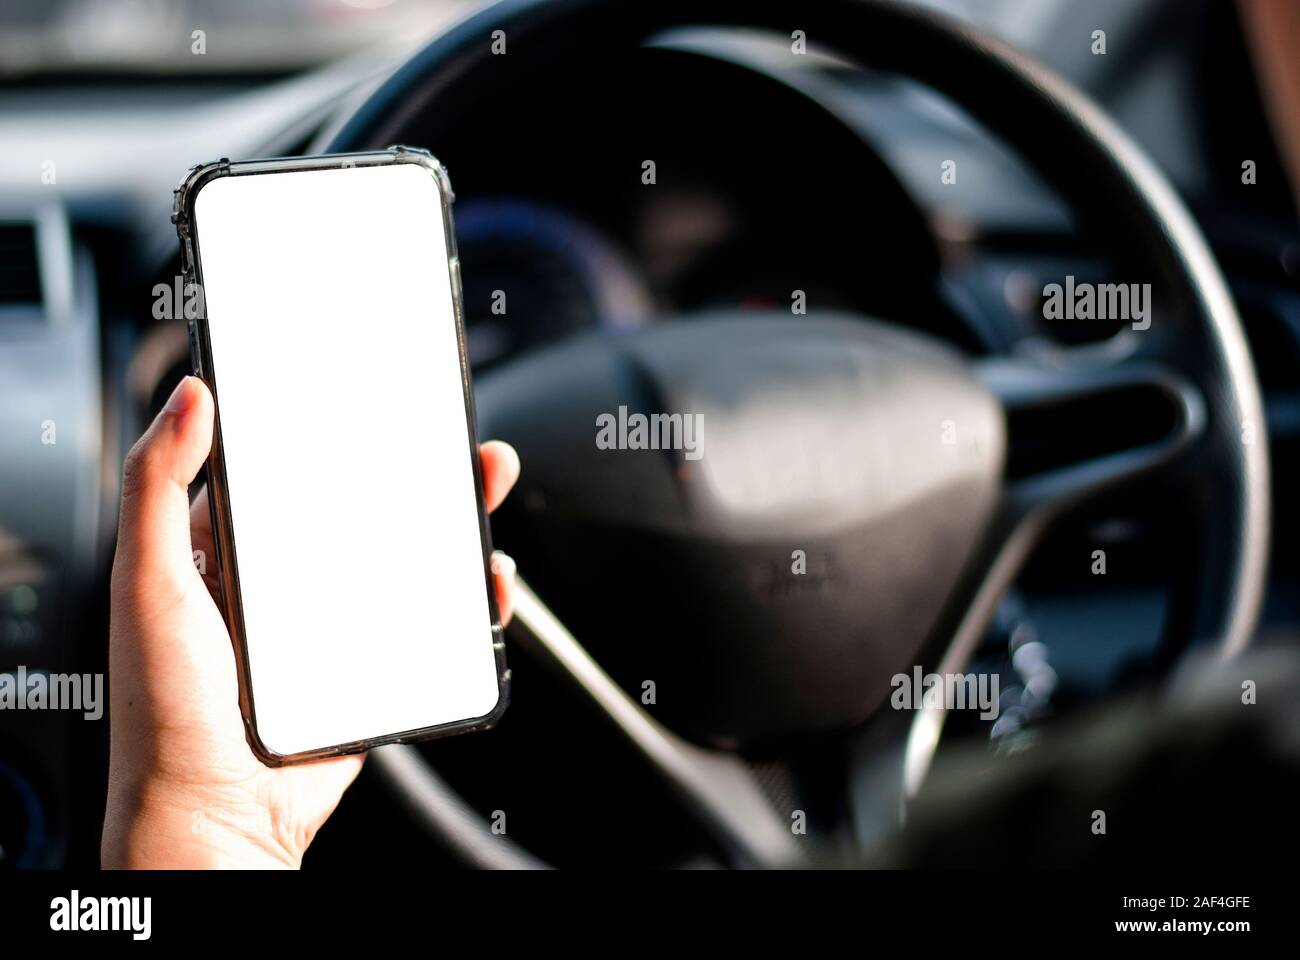 Mano sujetando el smartphone se utiliza nuevo modelo, para buscar direcciones, en los últimos modelos de coches.Concepto de utilizar un coche por teléfono. Foto de stock